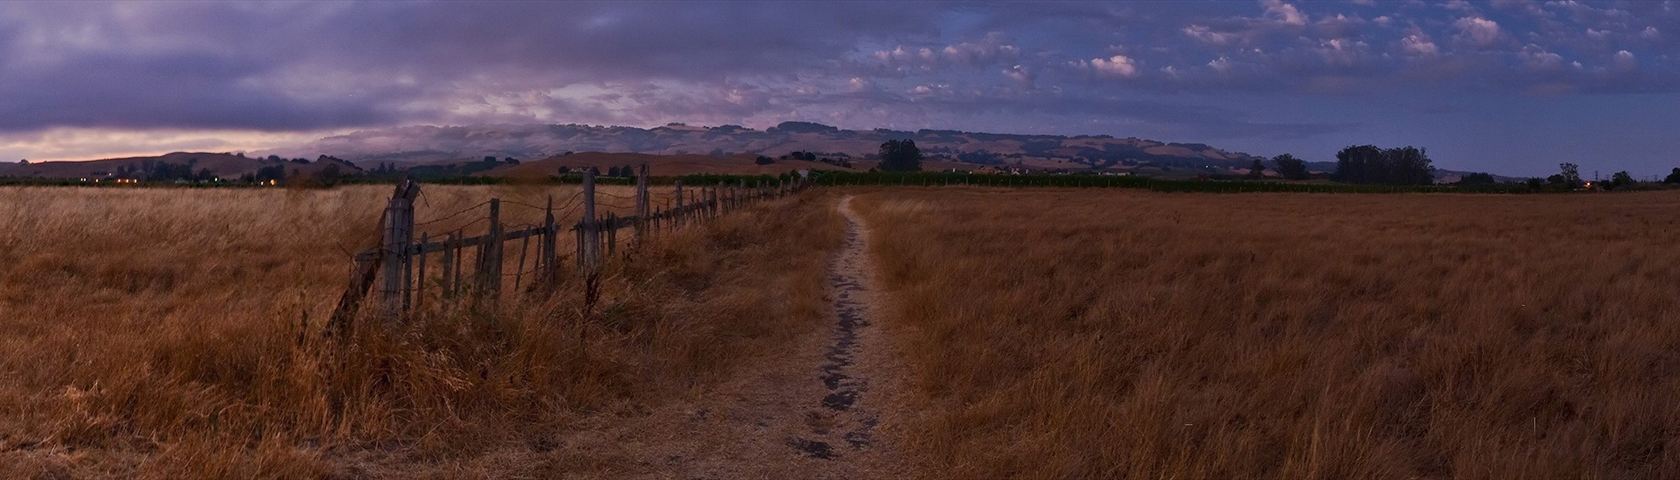 Path Through a Field